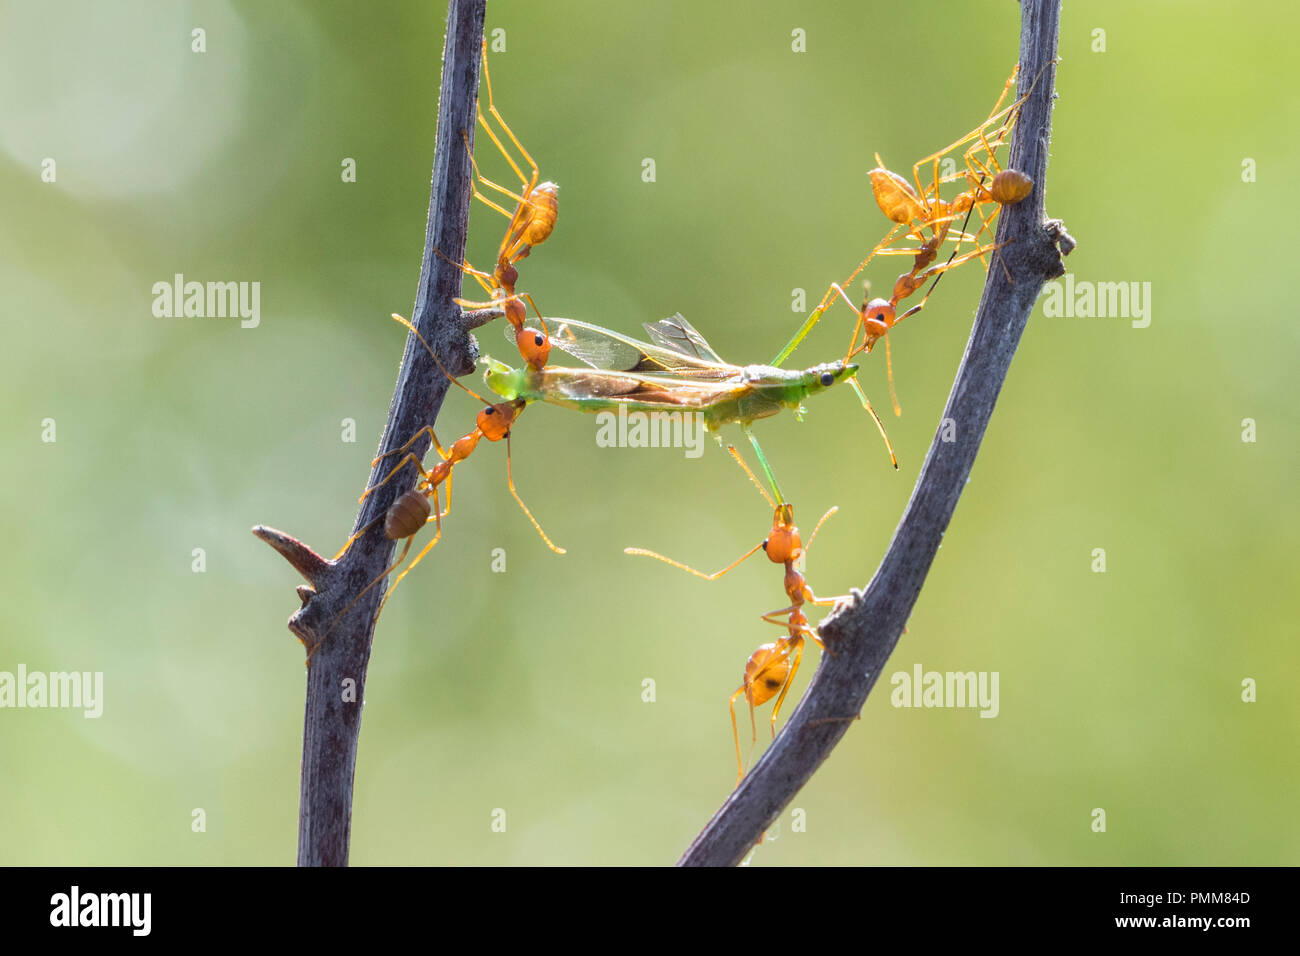 Cinq fourmis transportant un insecte mort, Indonésie Banque D'Images